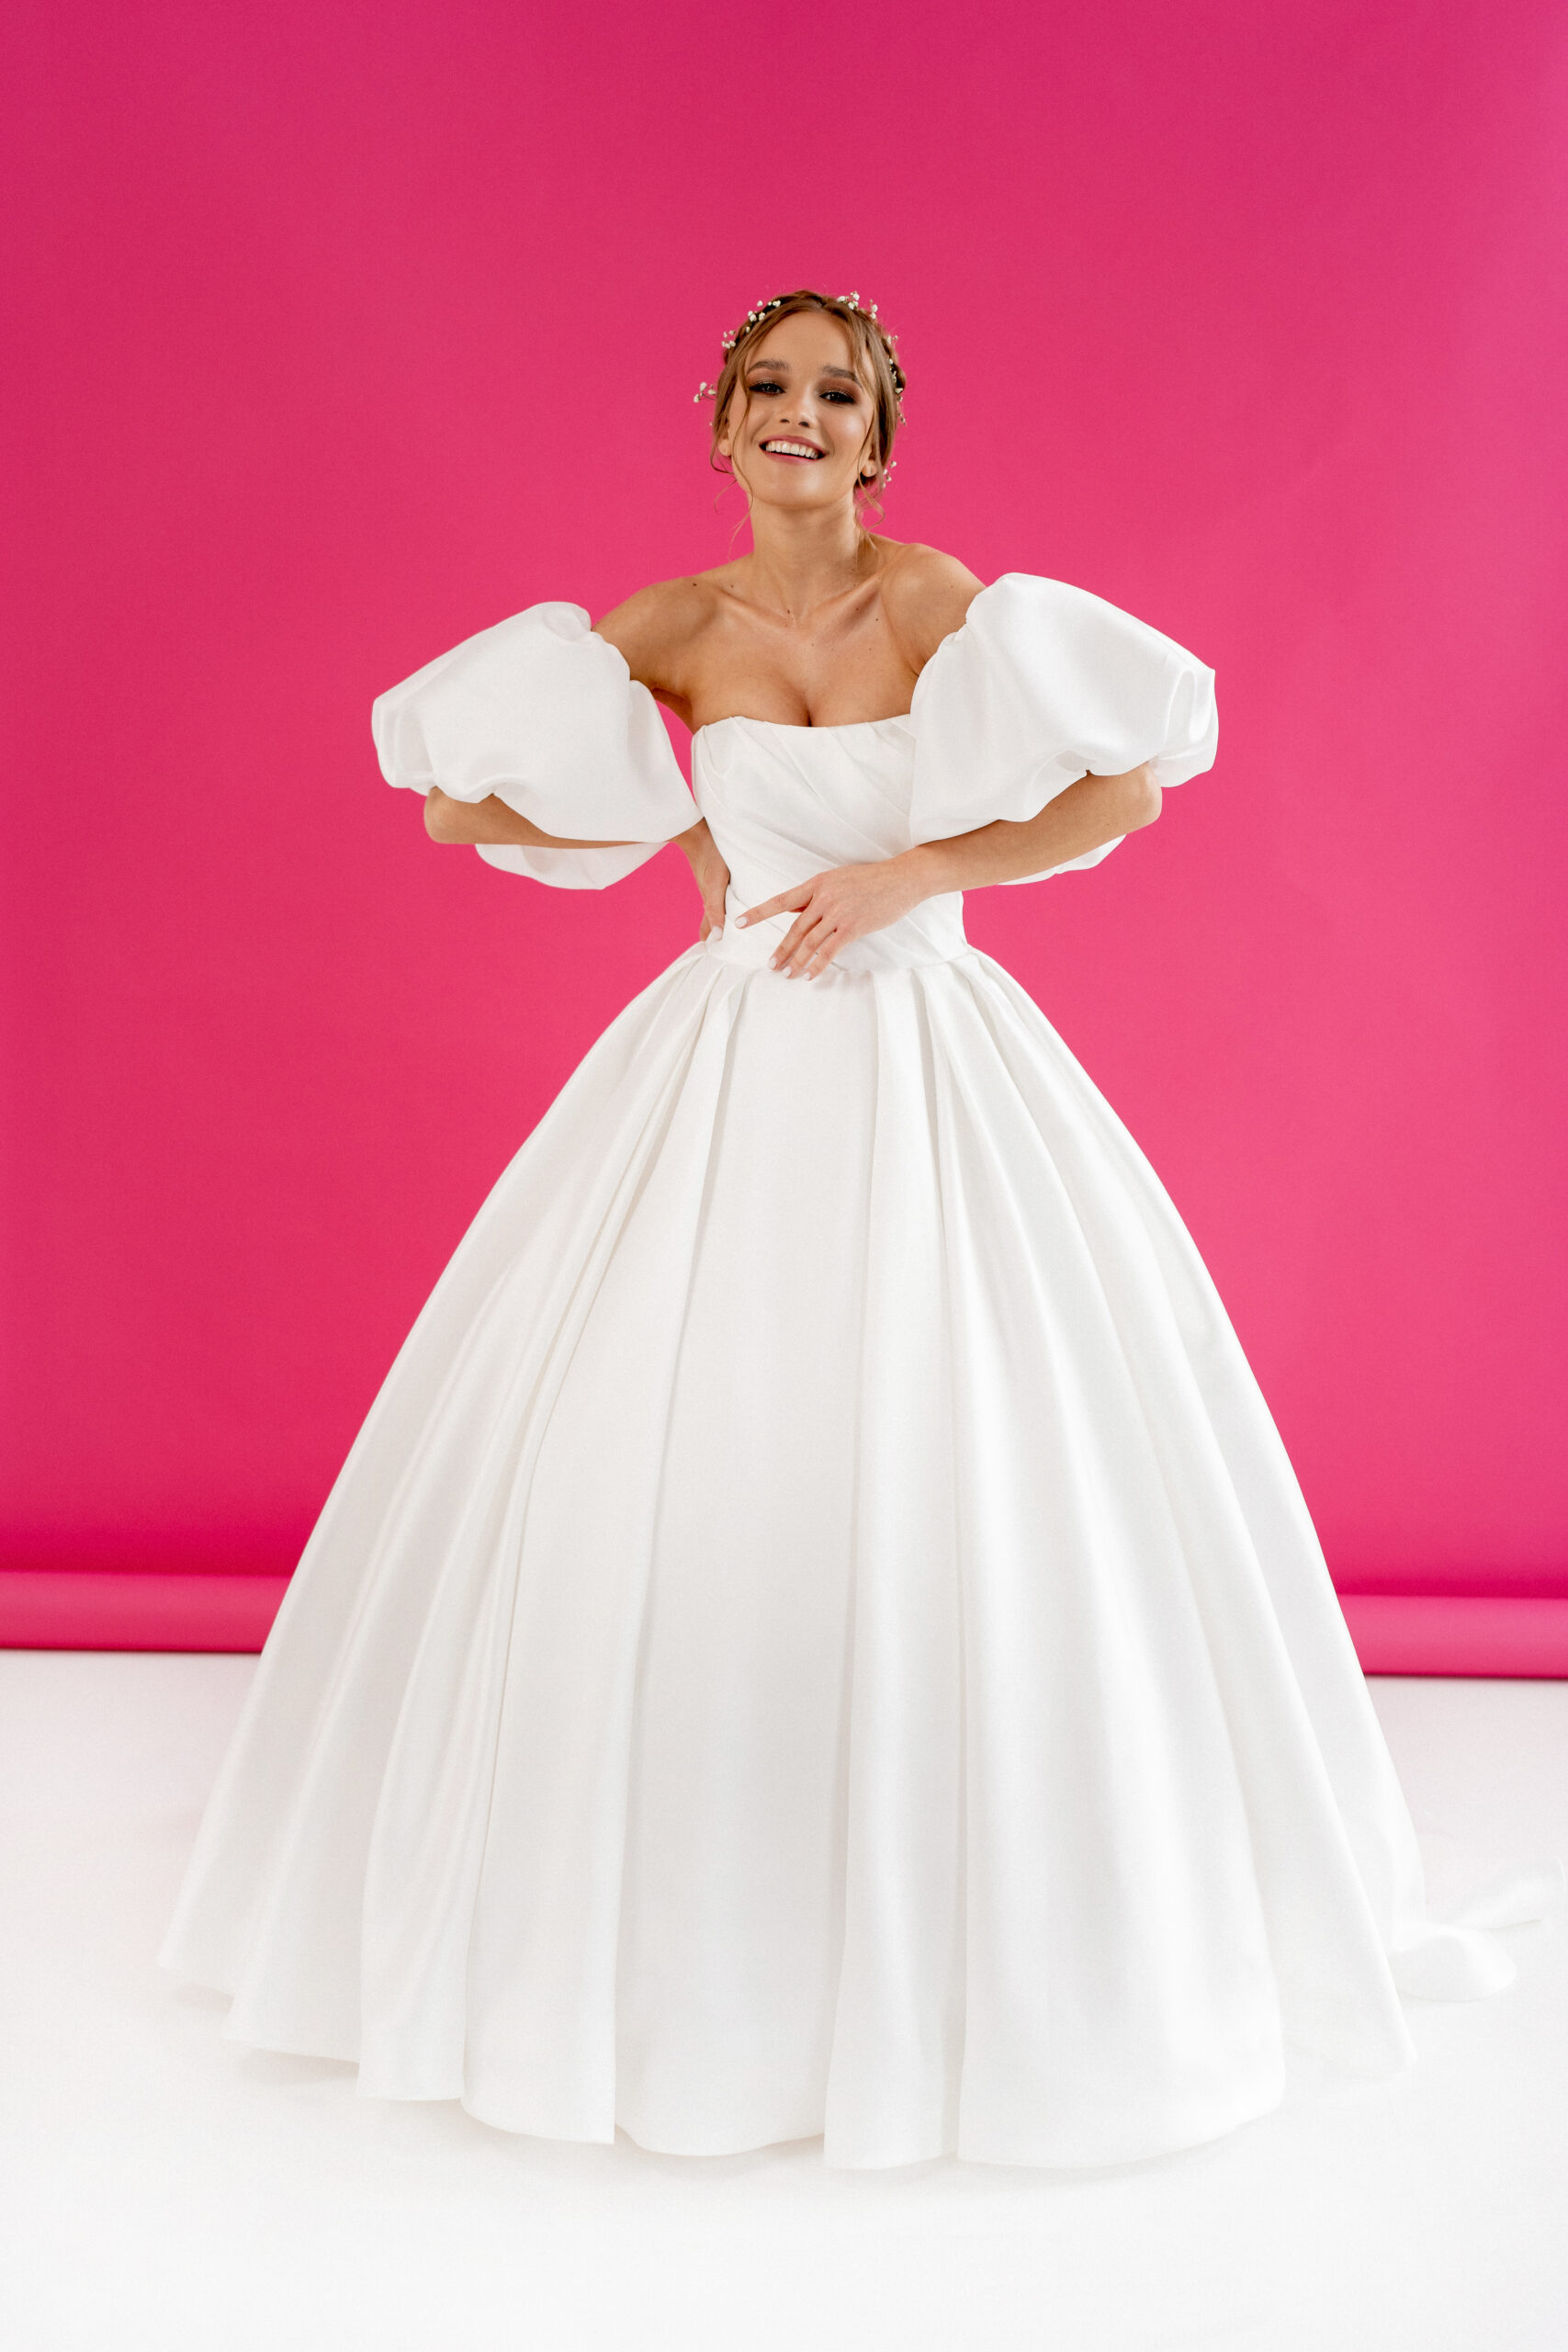 Das "Bianca" Brautkleid besticht durch seine zeitlose Eleganz. Das schlichte und dennoch ansprechende Design macht es zu einer idealen Wahl für Bräute, die nach klassischer Schönheit streben.